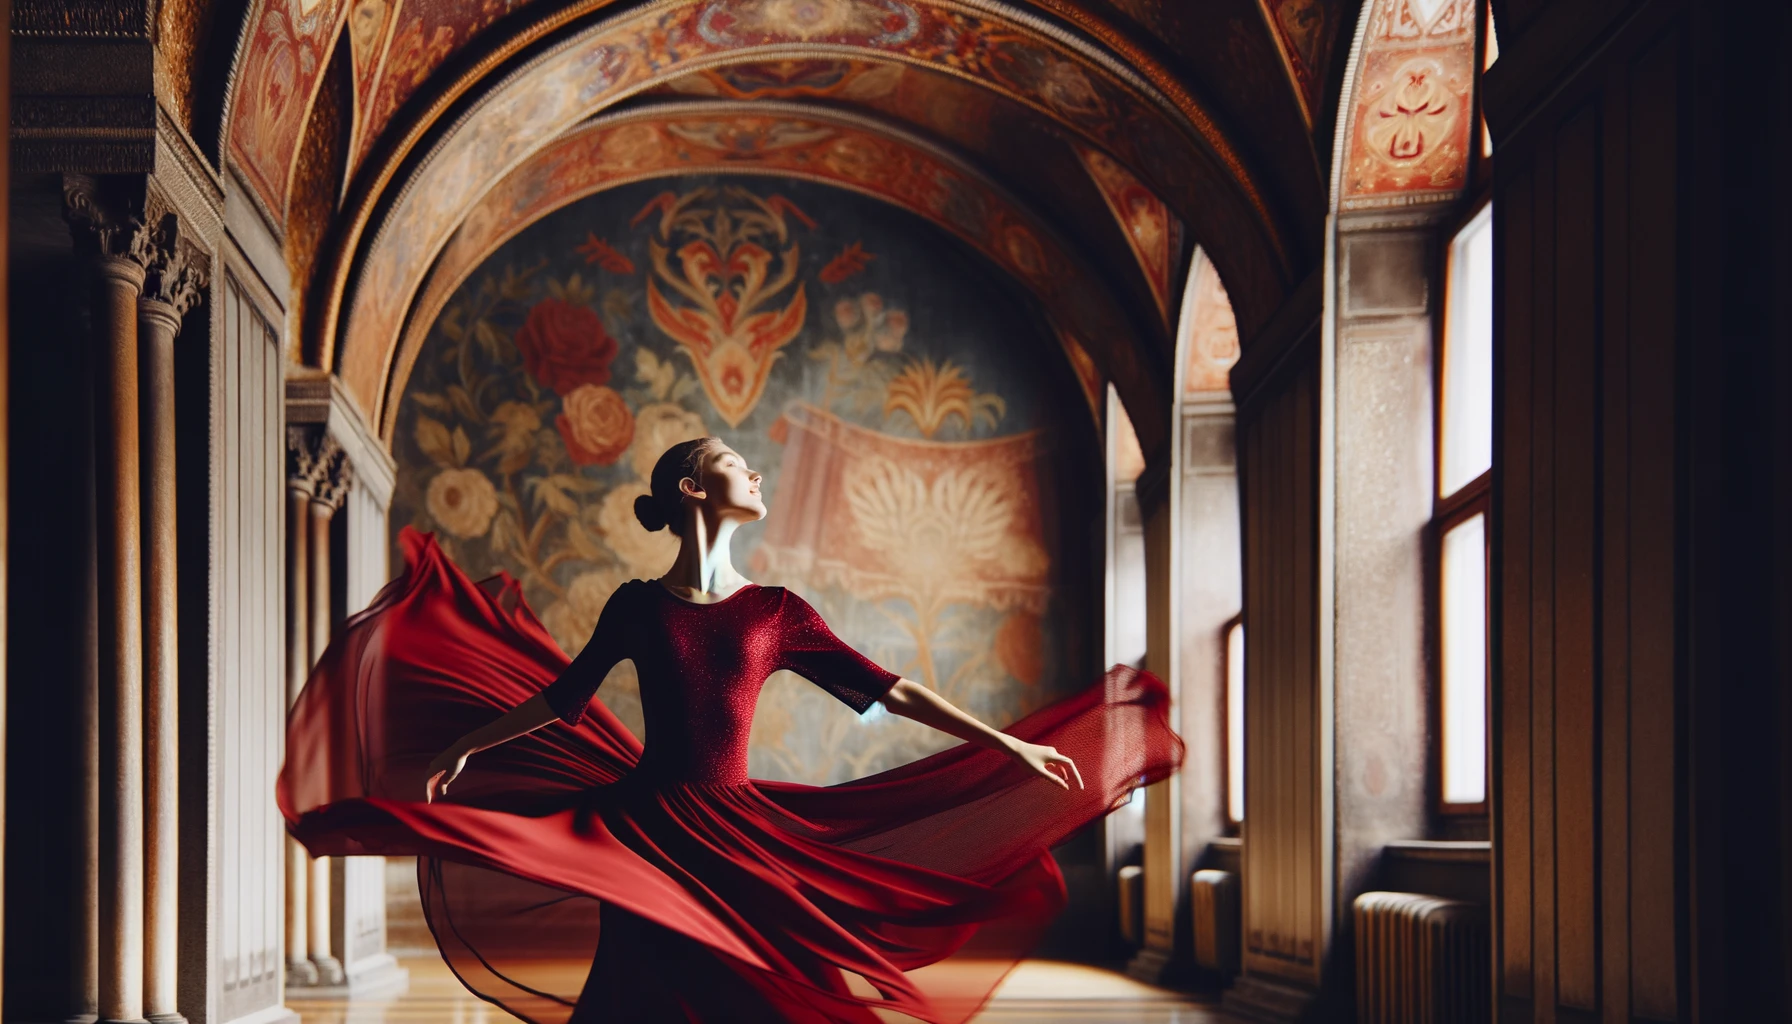 Foto einer Balletttänzerin in einem tiefroten Trikot, aufgenommen in einem geräumigen Tanzstudio, wobei ihre Bewegung einen dynamischen Fluss von Stoff erzeugt